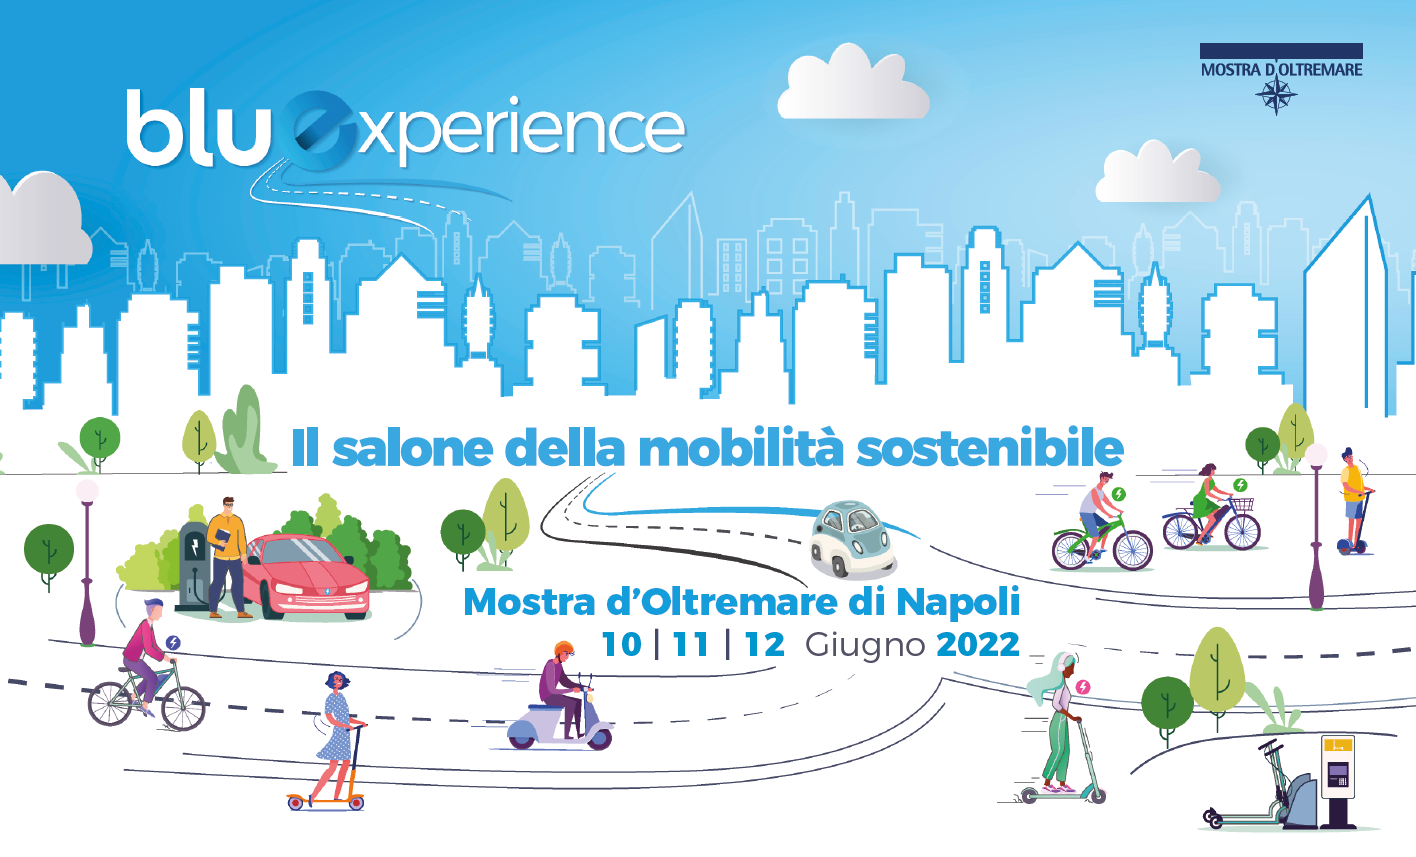 Bluexperience rende per tre giorni Napoli la città della mobilità sostenibile